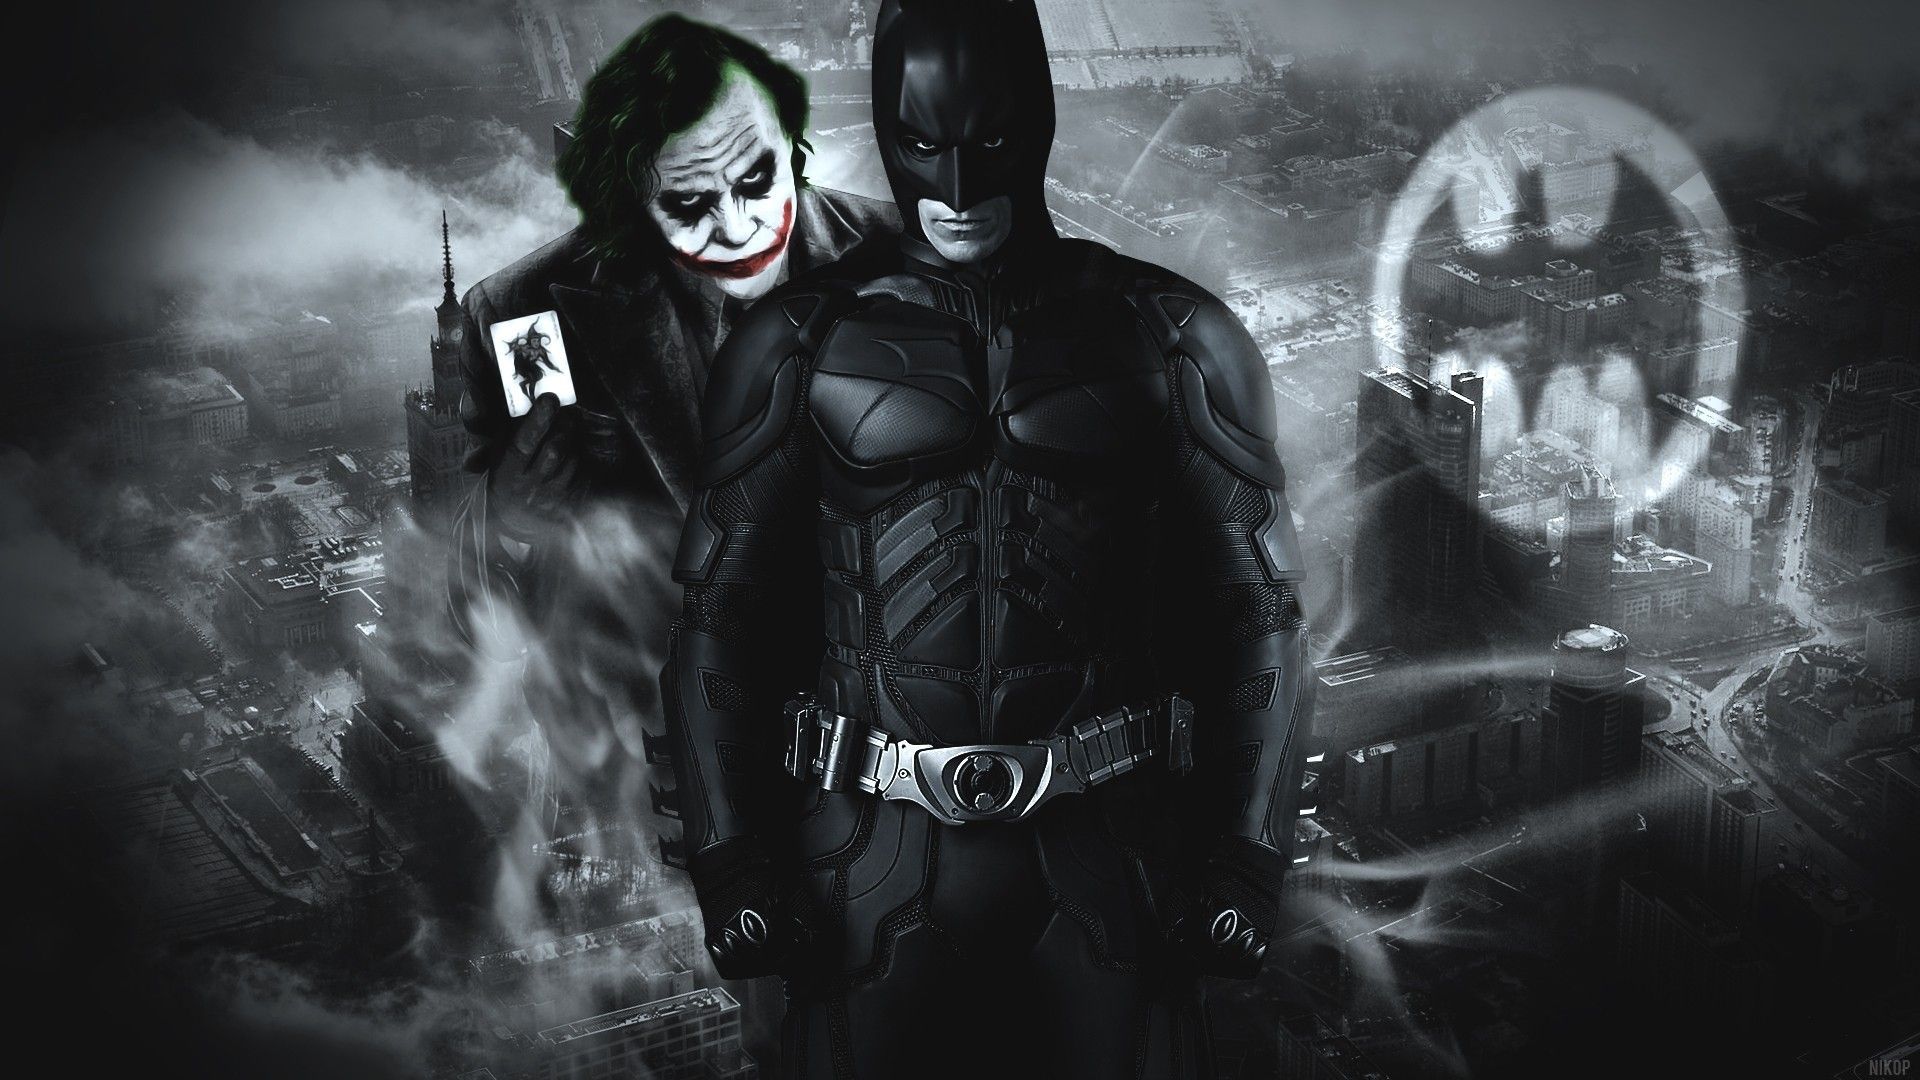 Batman Vs Joker 4K Wallpapers, HD Wallpapers